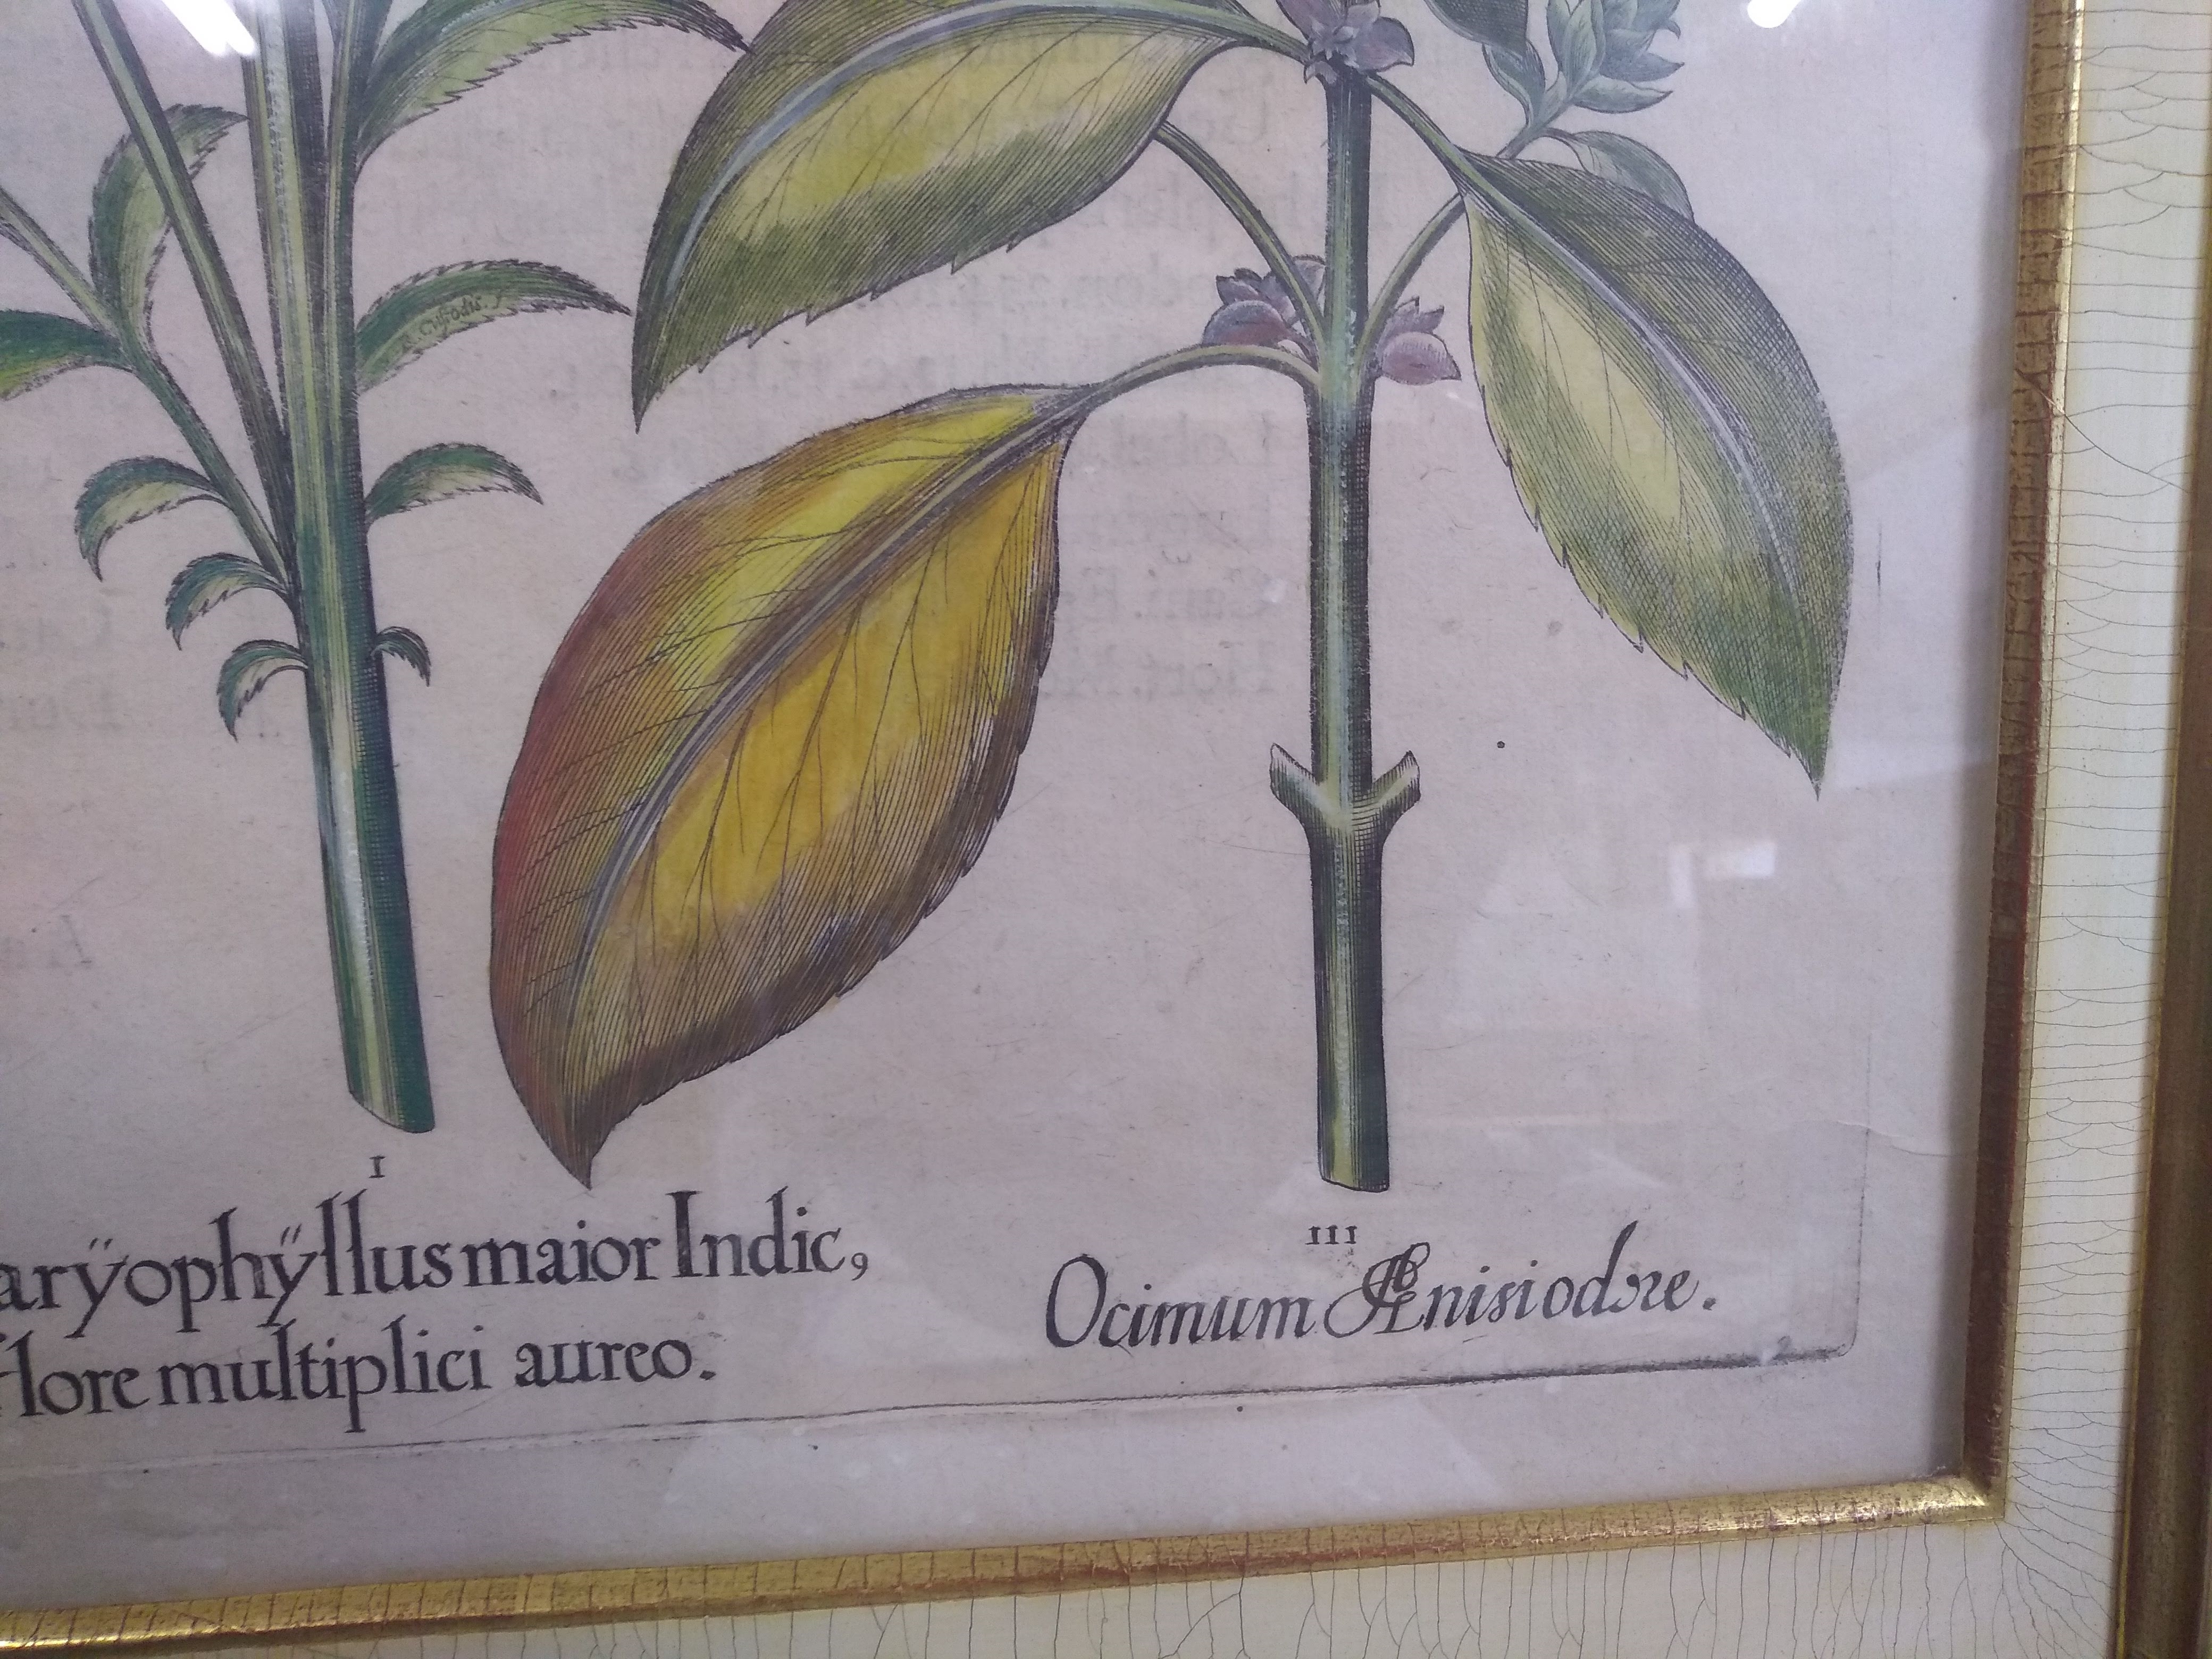 Artwork by Basilius Besler, Strich Nodendron; Piper Indicum filiquis flavis; Lilium fatuum; Caryophyllus maior indic, florae multiplice aureo, Made of hand coloured engravings